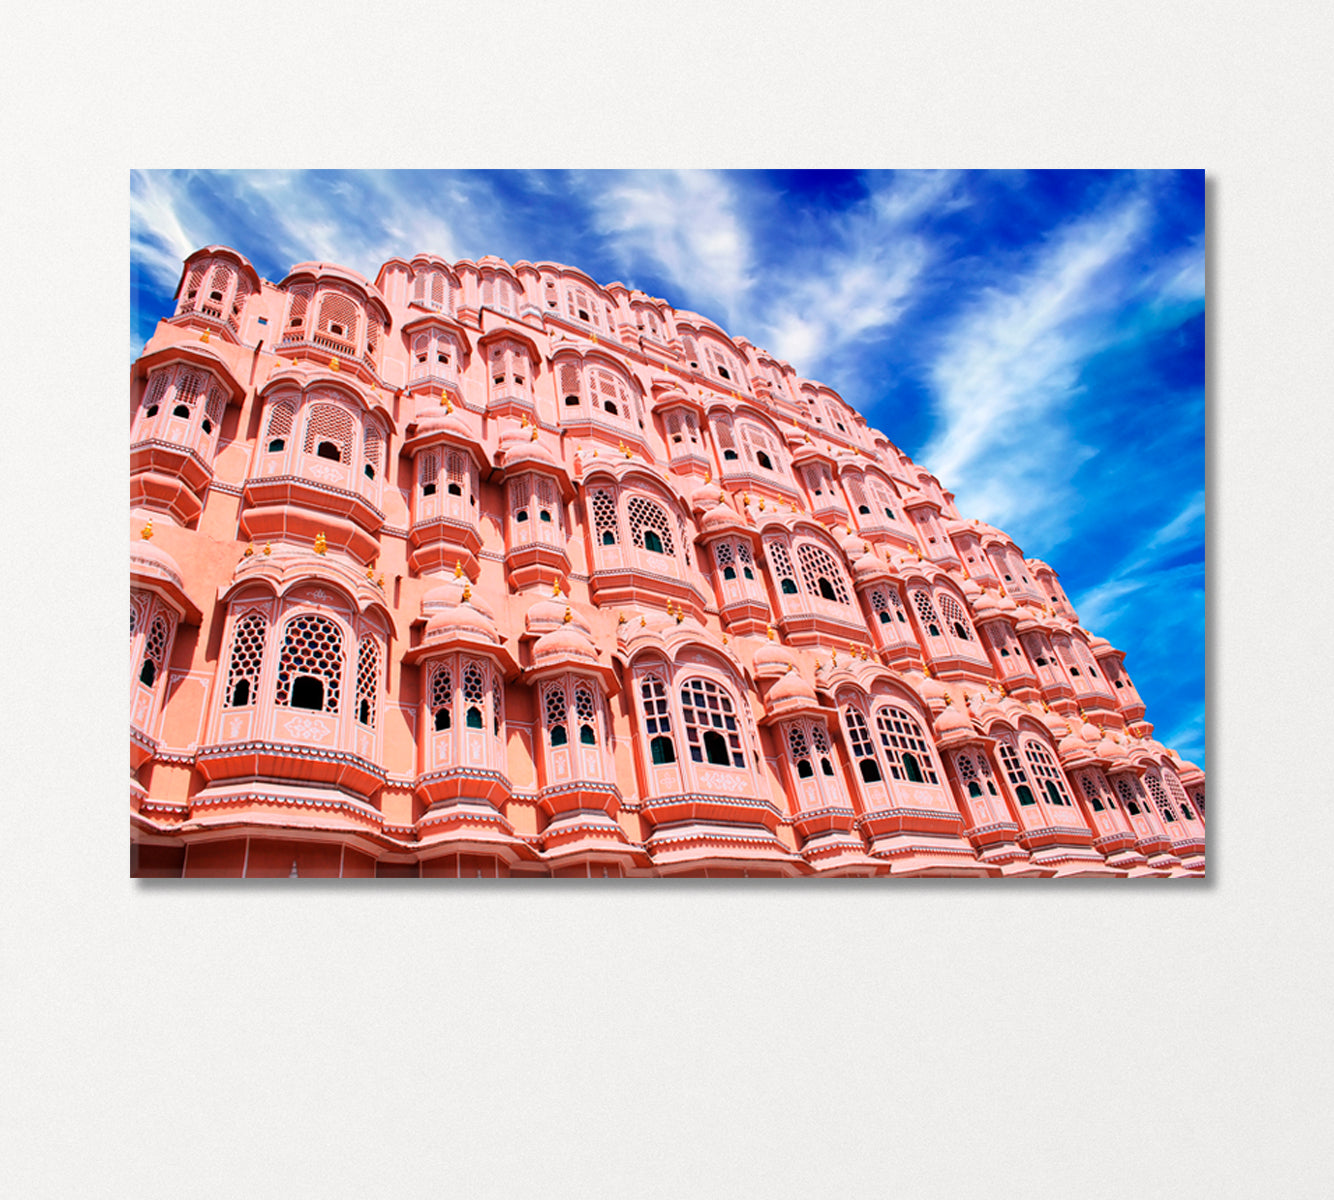 Hawa Mahal India Canvas Print-Canvas Print-CetArt-1 Panel-24x16 inches-CetArt